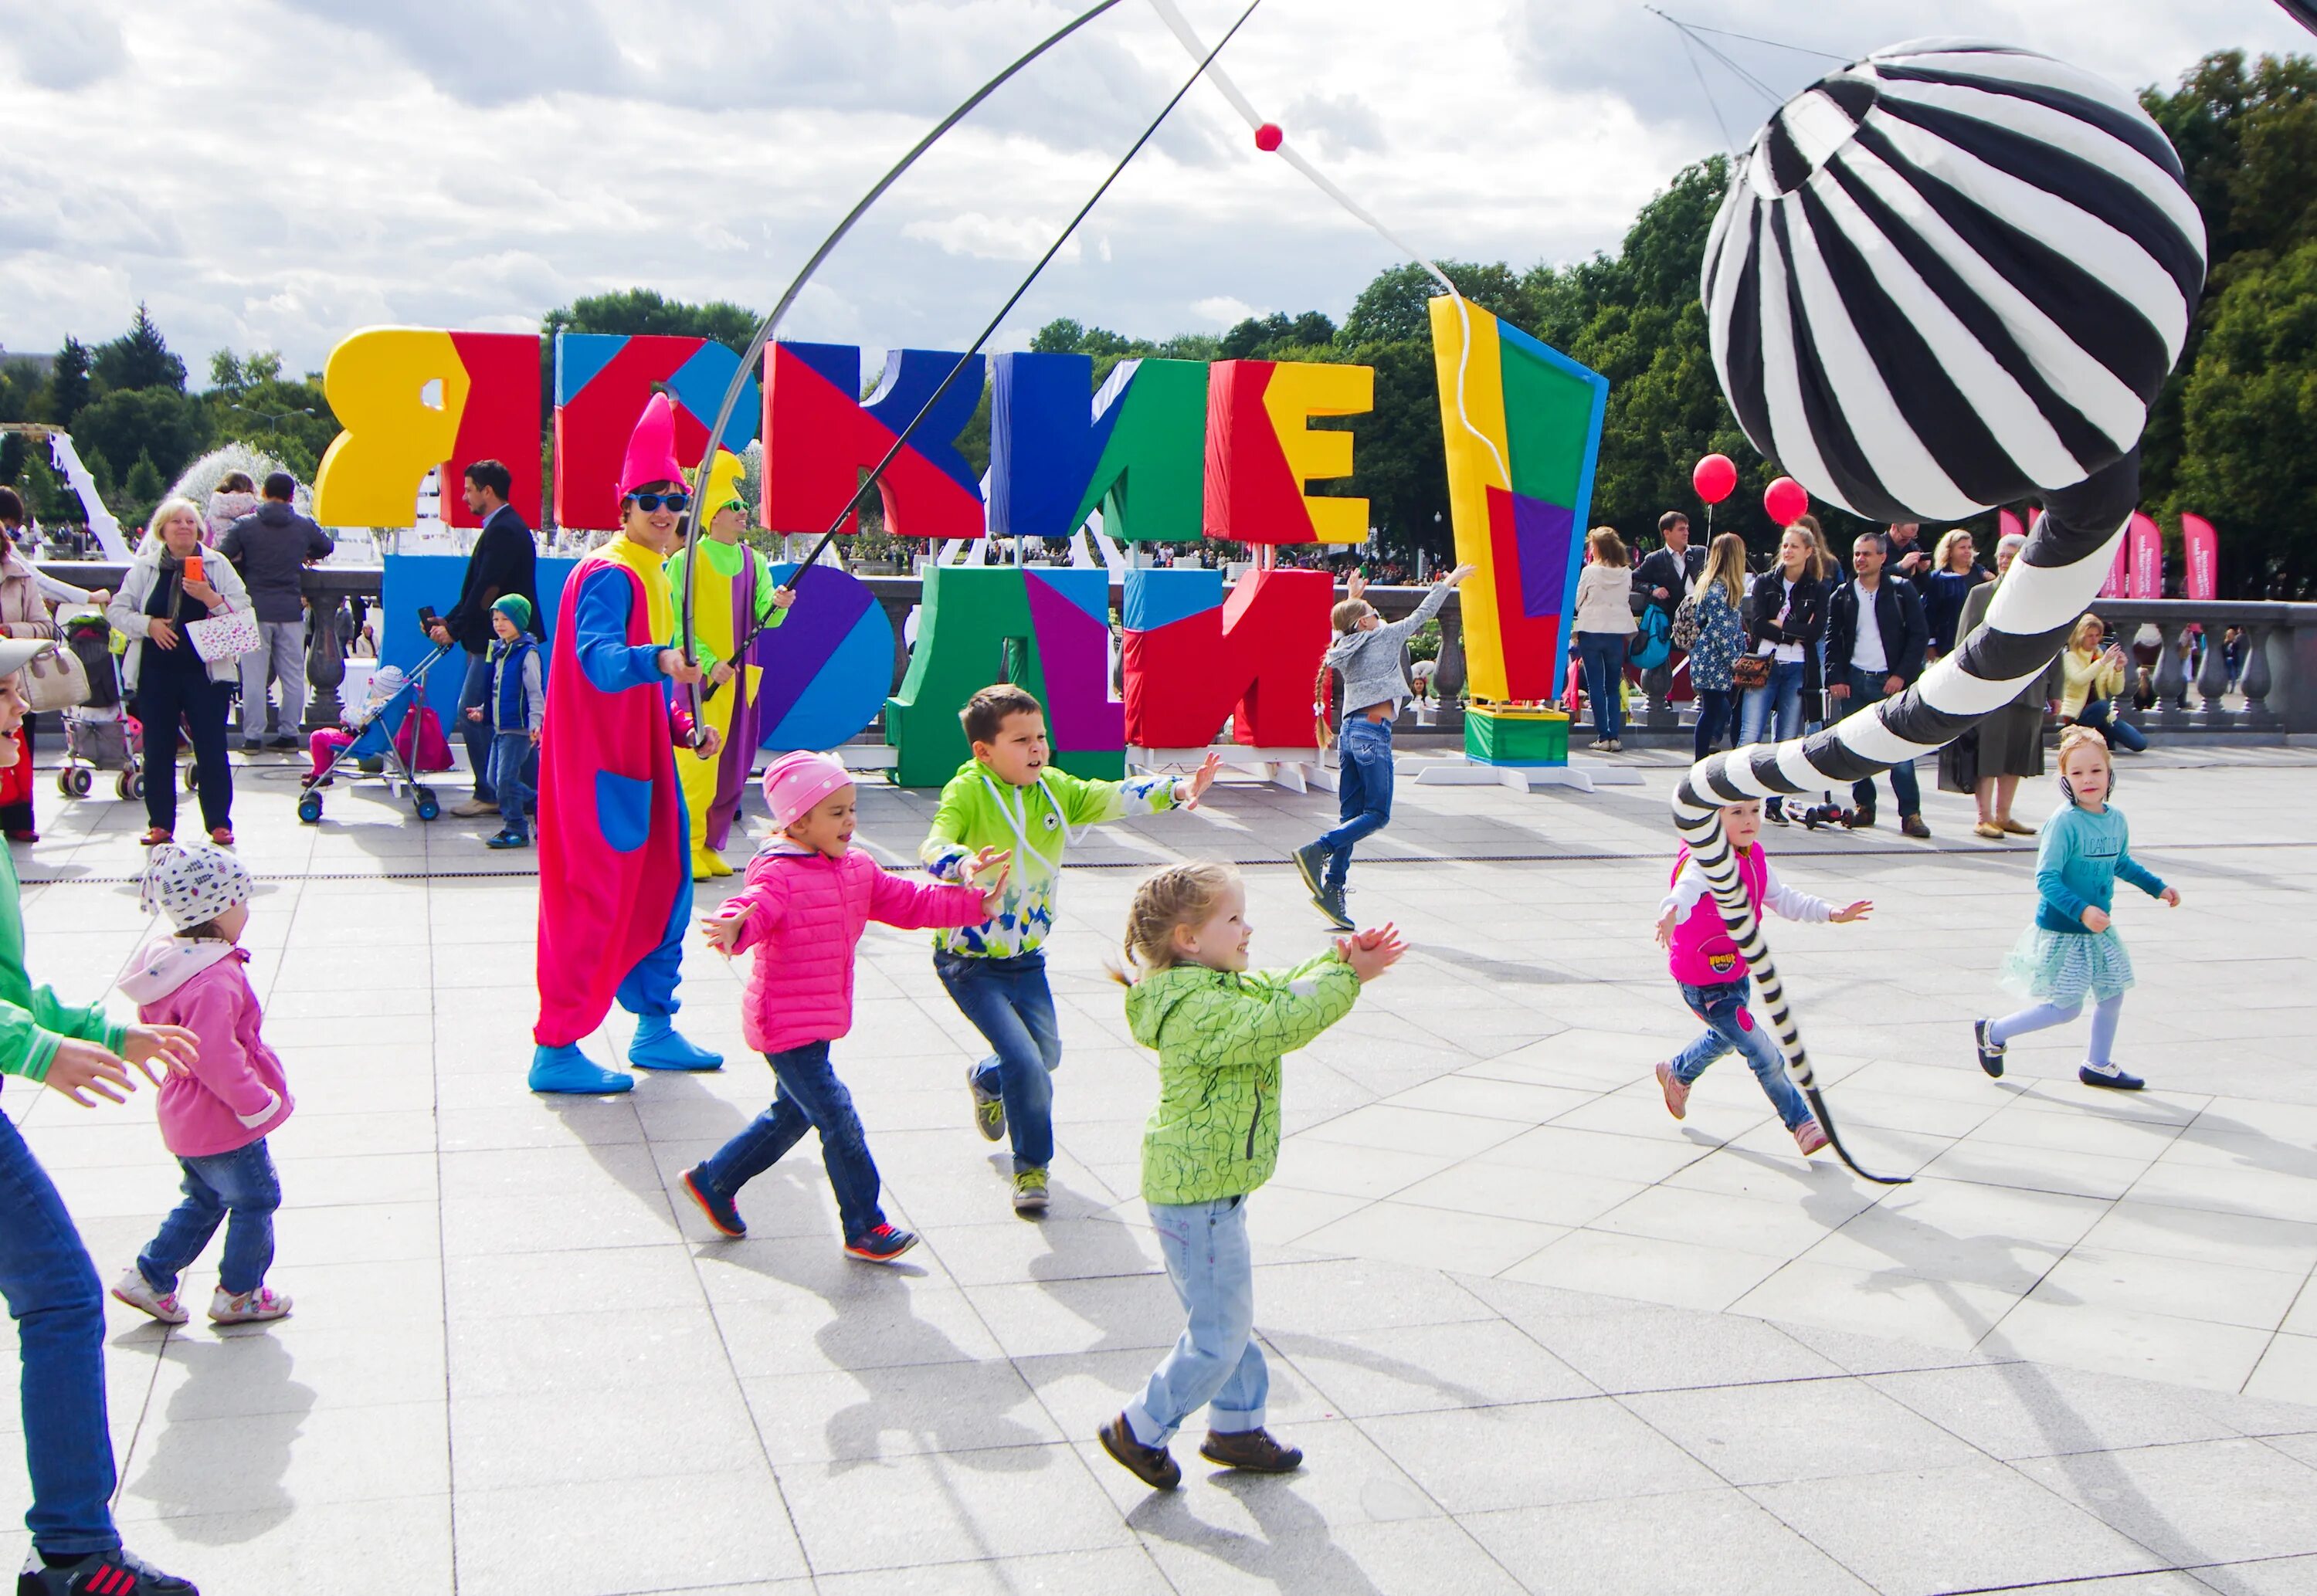 Развлечения г. Творческий фестиваль «яркие люди» в «Музеоне». Праздник в парке. Развлекательные площадки для детей. Интерактивные площадки для детей на празднике.